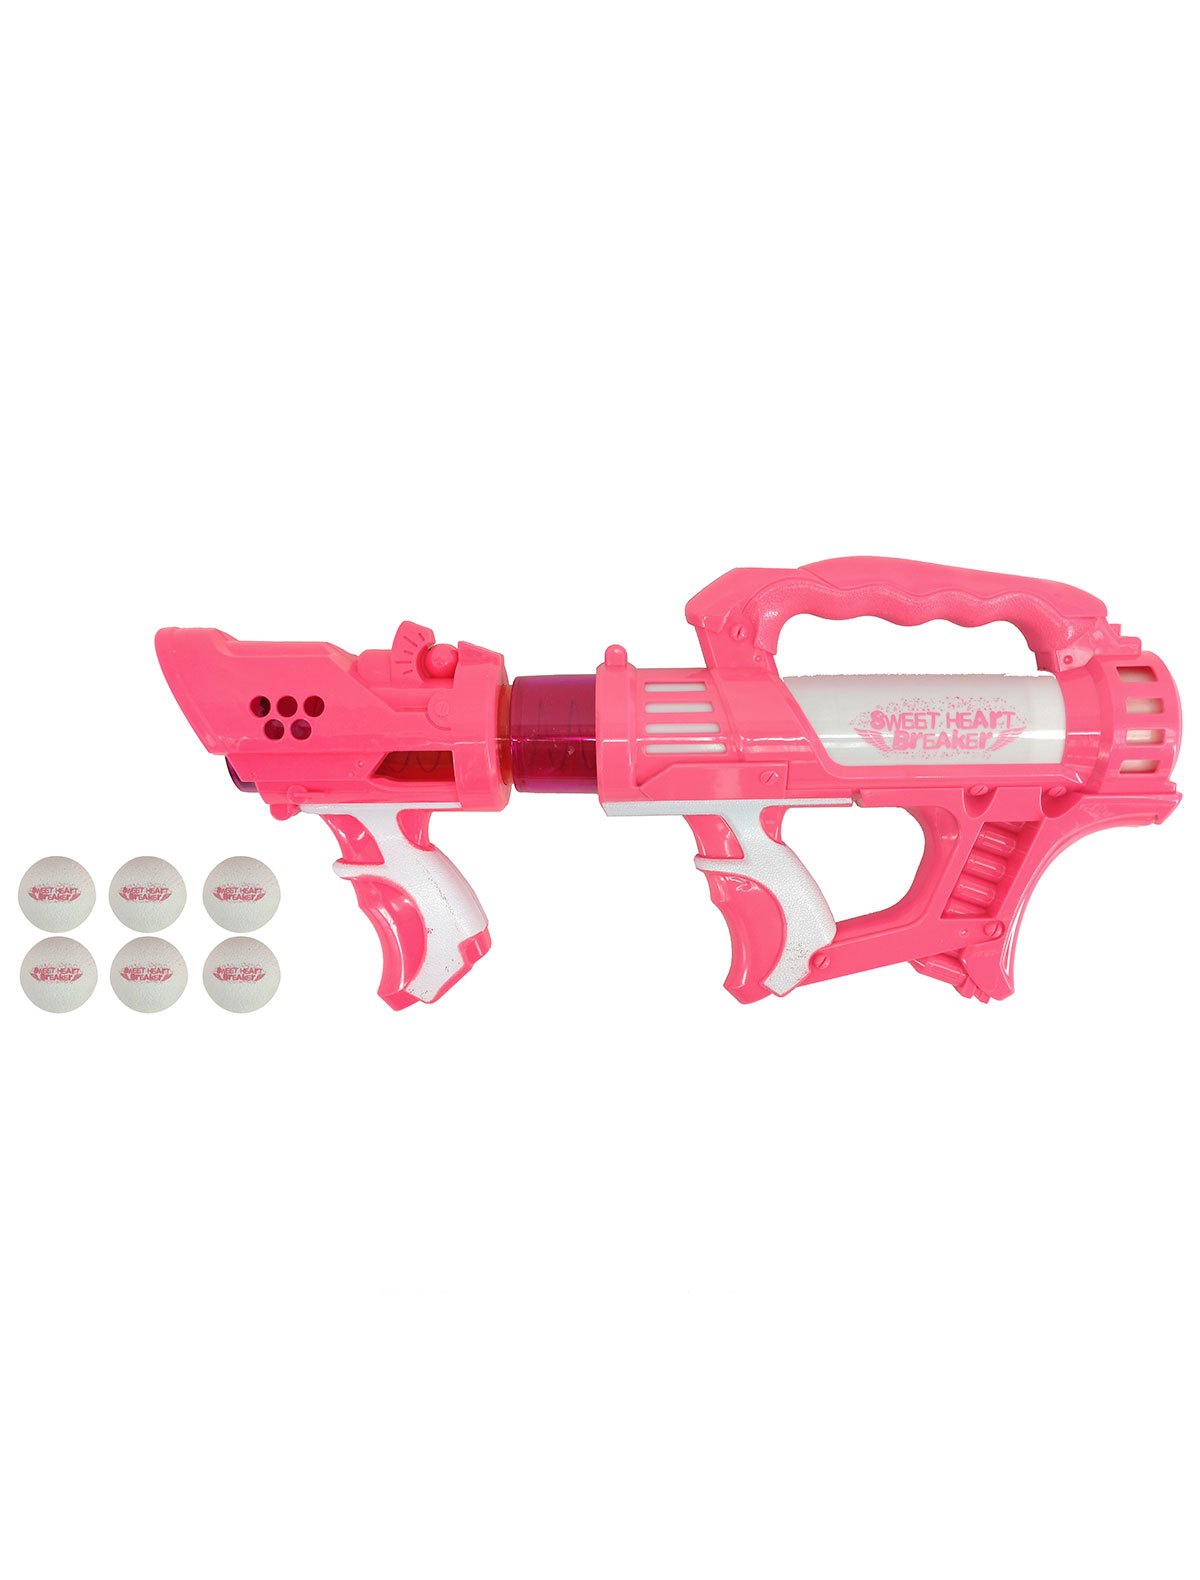 2213441, Игрушка Toy Target, розовый, 7134529071678  - купить со скидкой